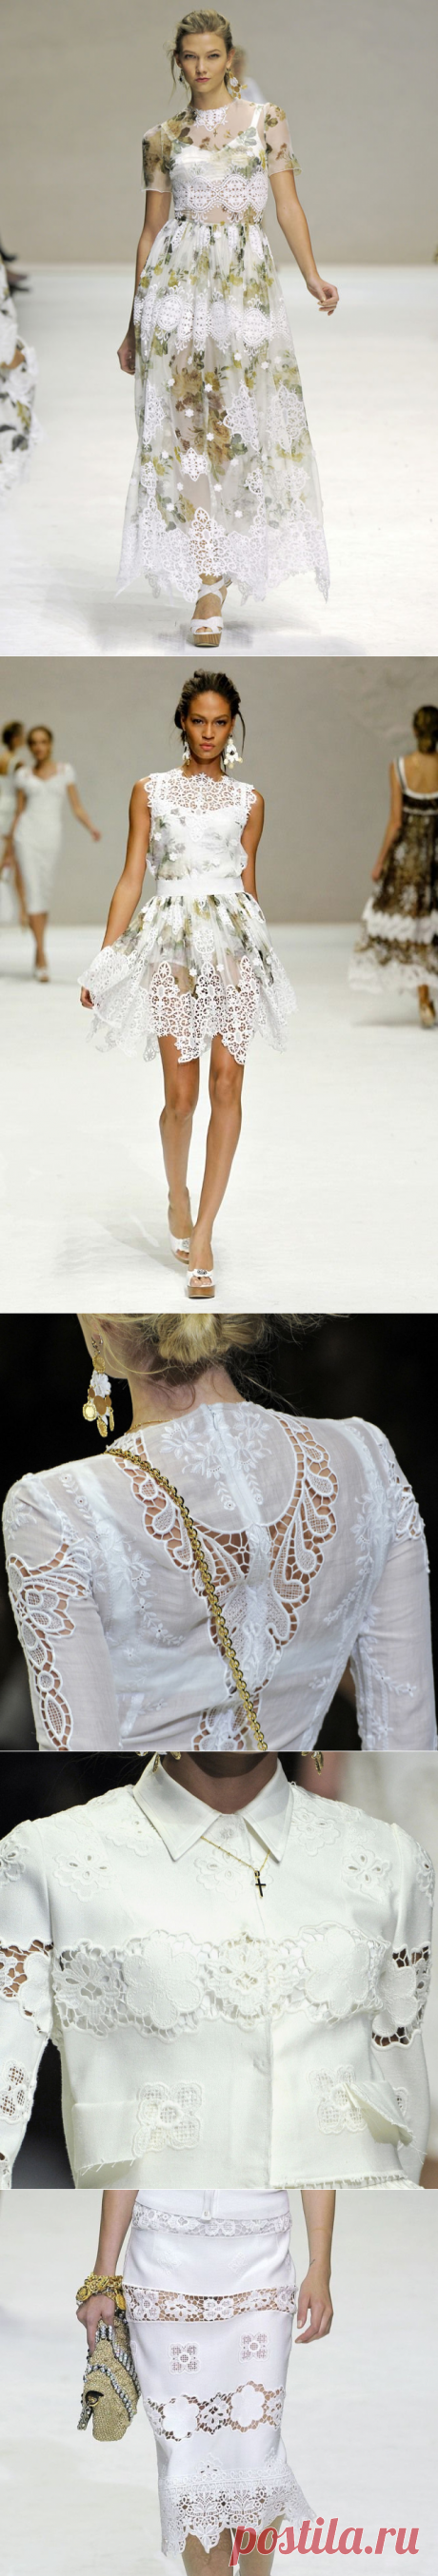 Кружевное изящество в коллекции Dolce & Gabbana весна-лето 2011: публикации и мастер-классы – Ярмарка Мастеров